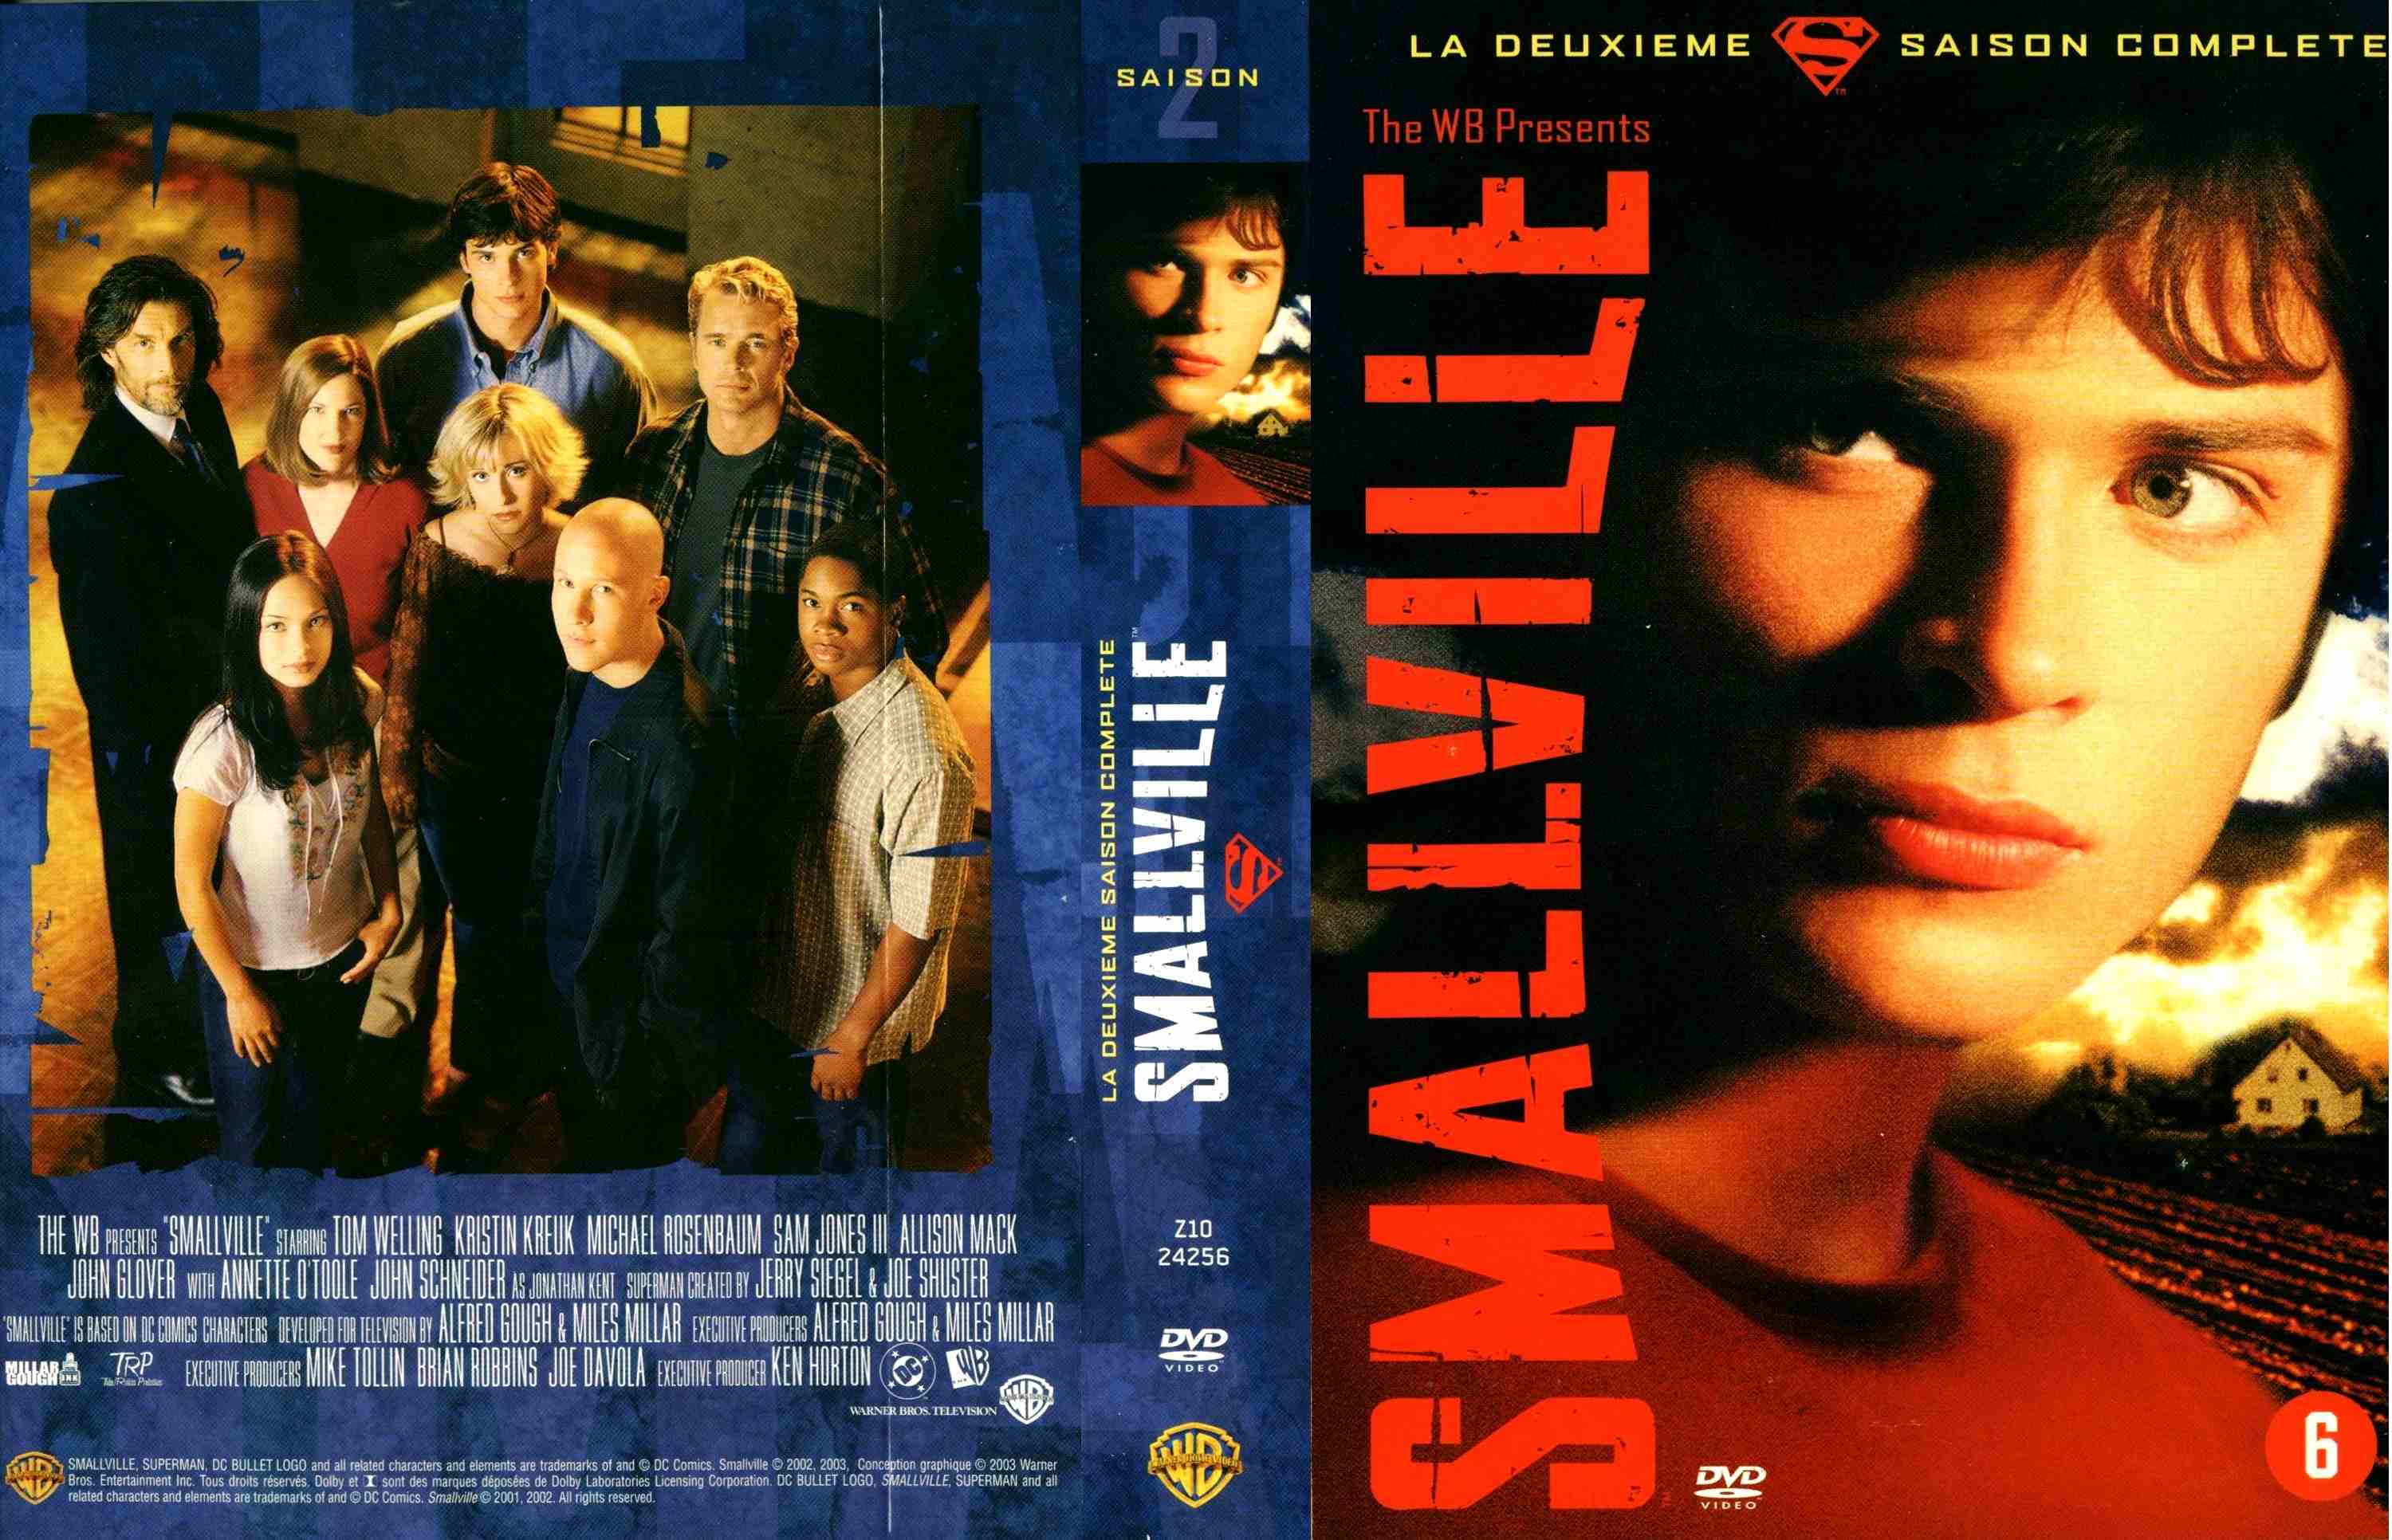 Jaquette DVD Smallville saison 2 COFFRET